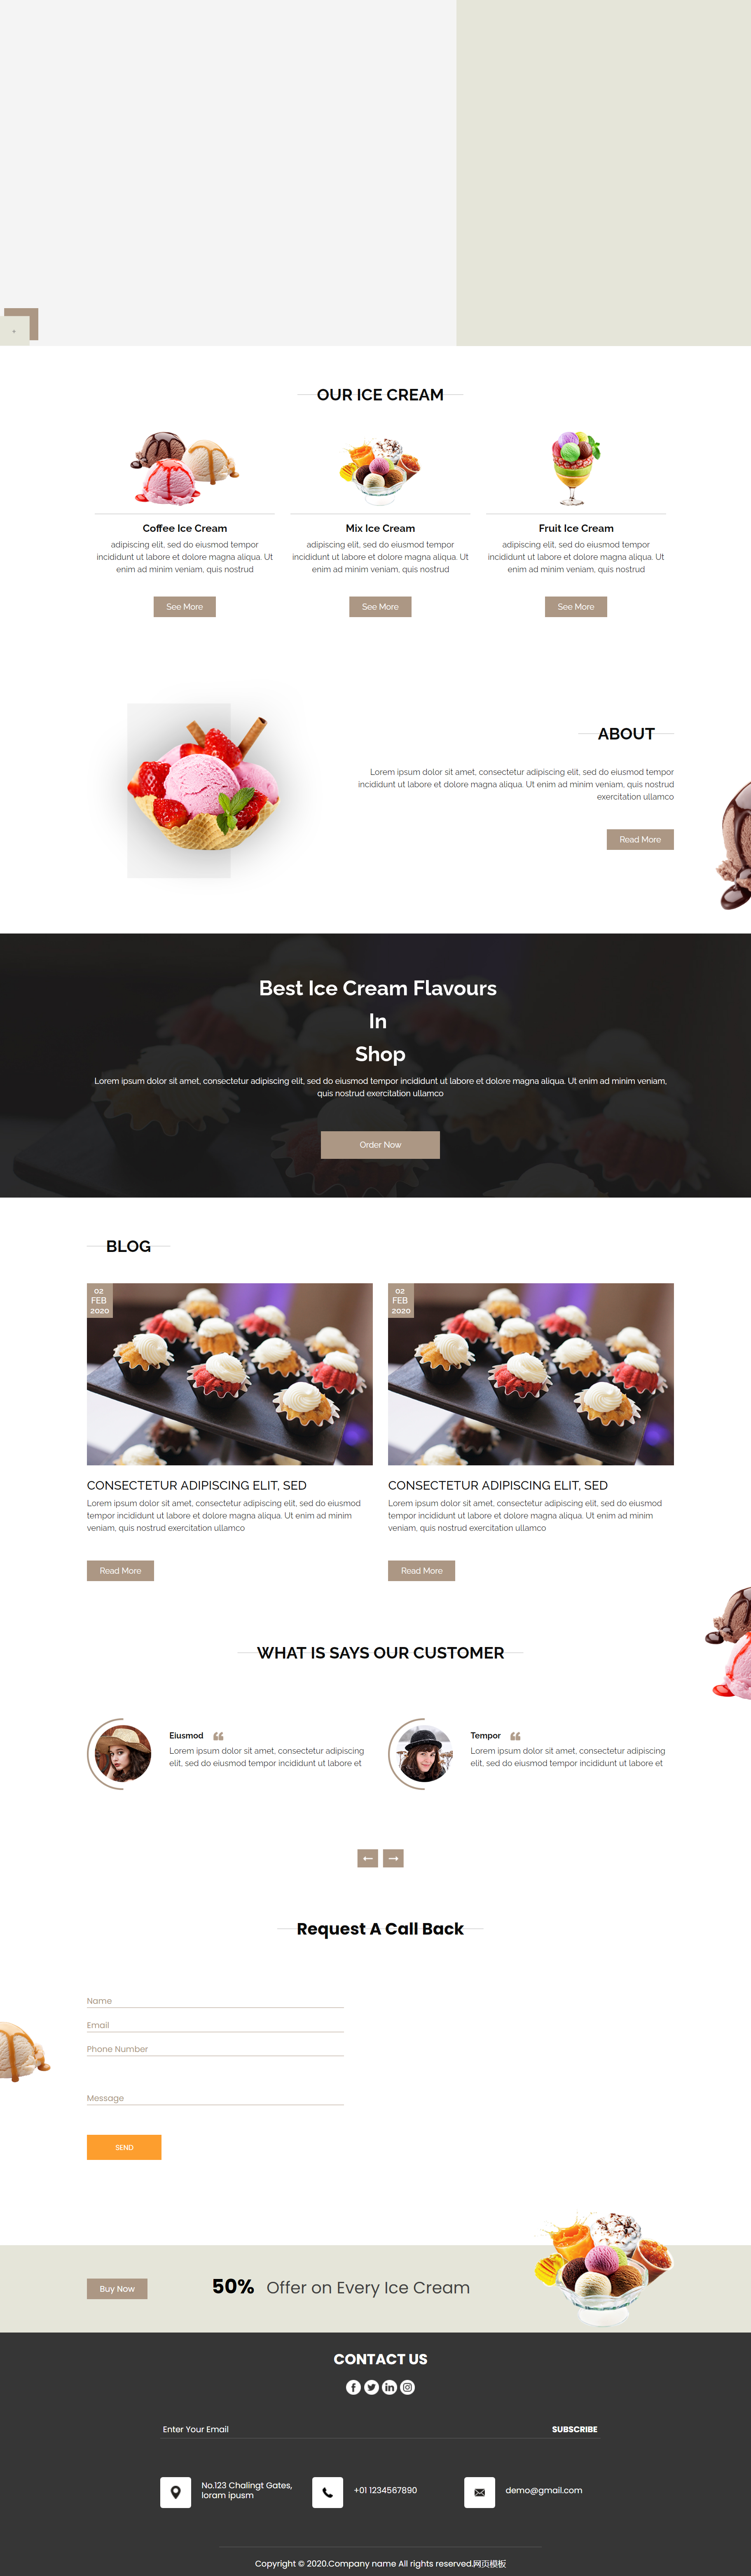 HTML5棕色宽屏样式蛋糕奶油店网页模板代码下载